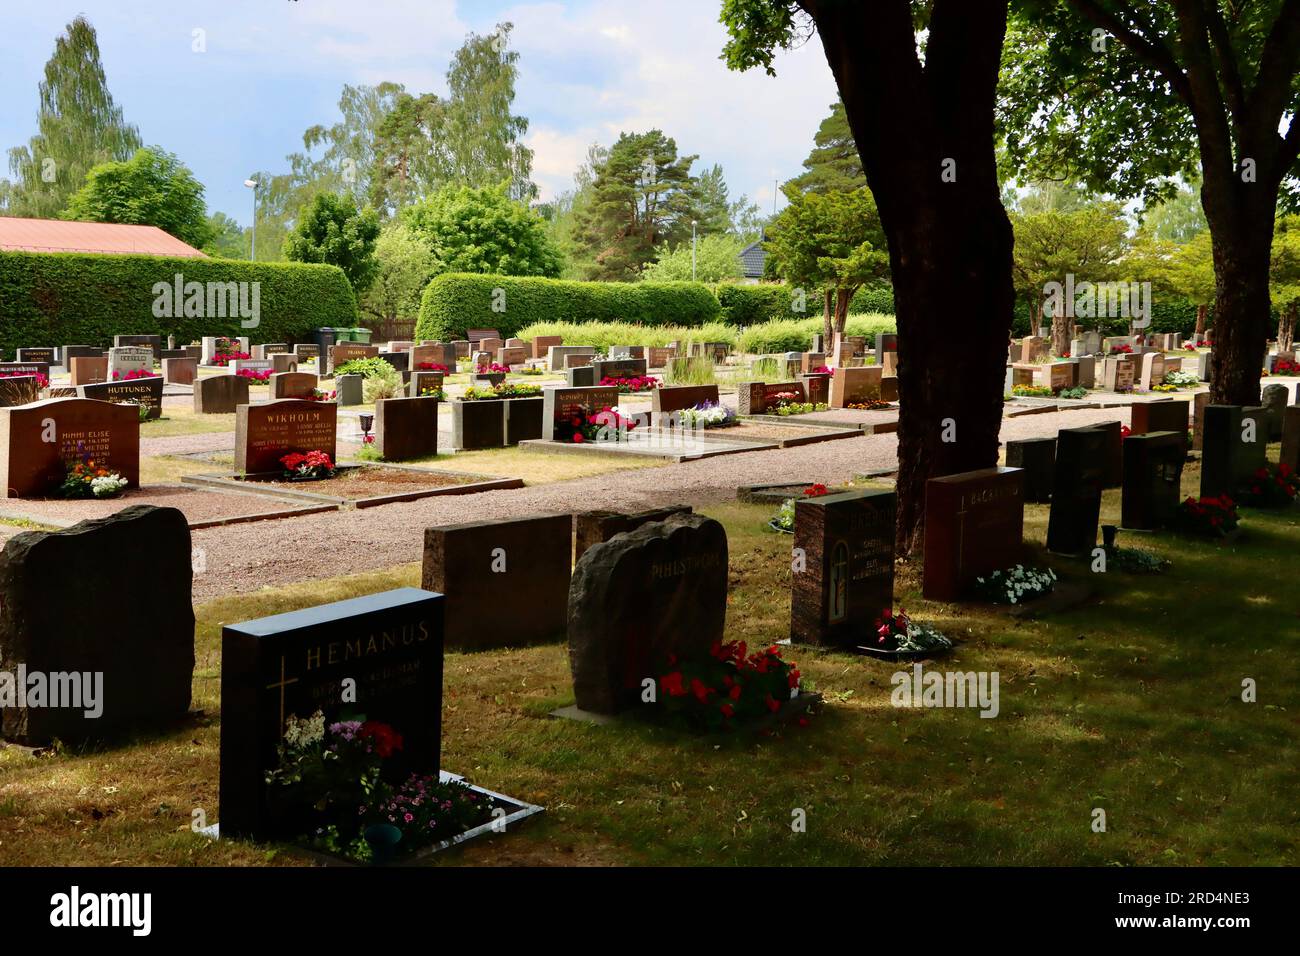 Le cimetière luthérien de Karjaa / Karis dans la région d'Uusimaa dans le sud de la Finlande Banque D'Images